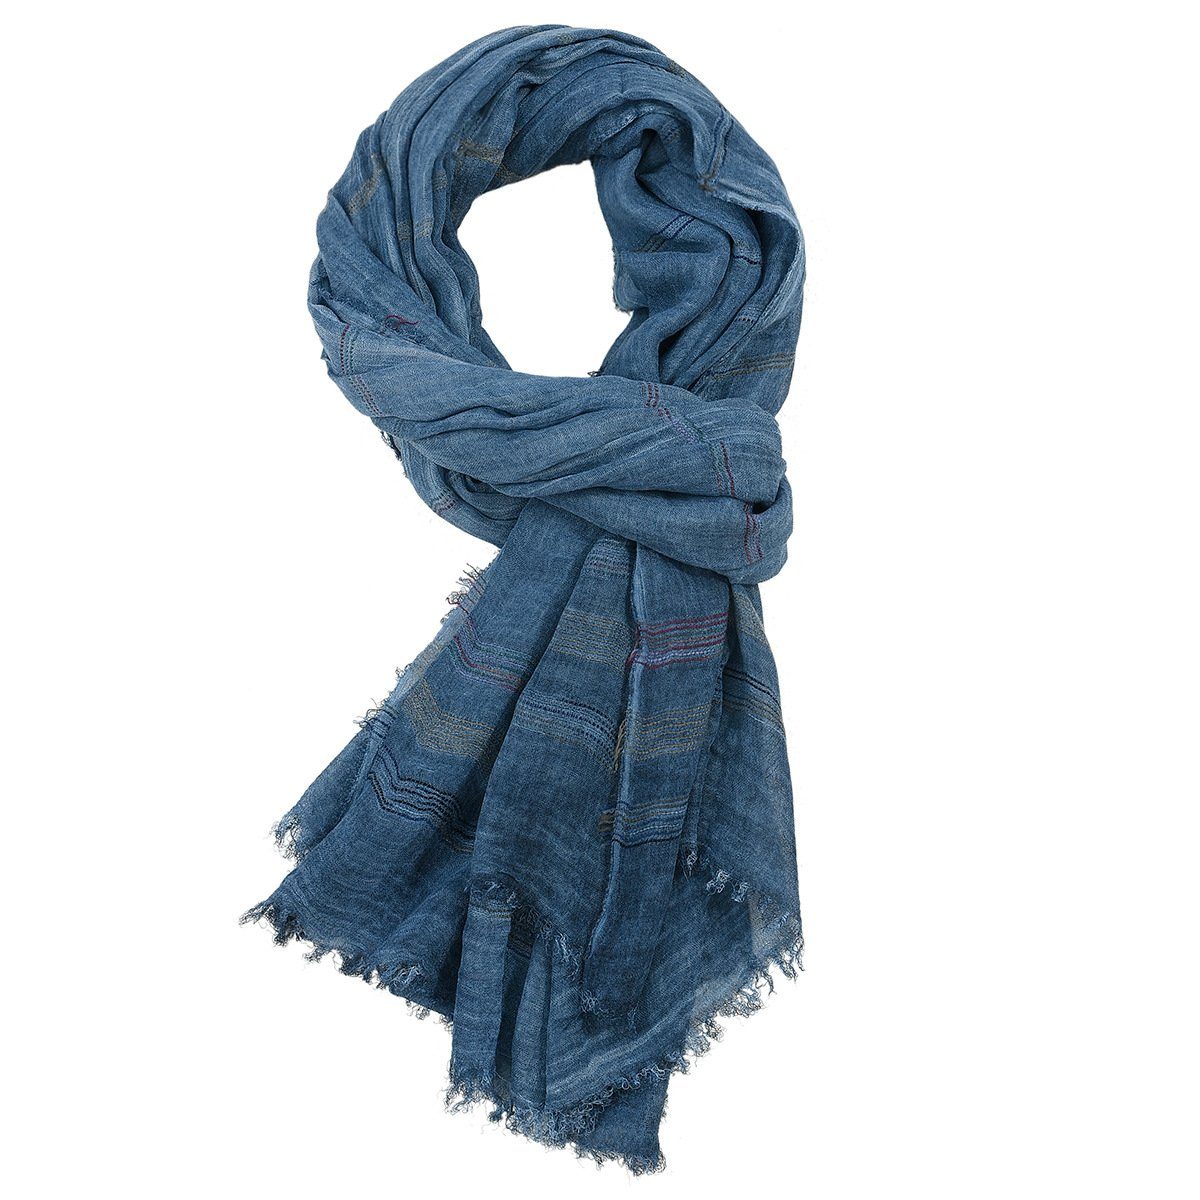 GelldG Modeschal Reversible Warme und weiche Unisex Schal Stola Wrap Solid Color marineblau